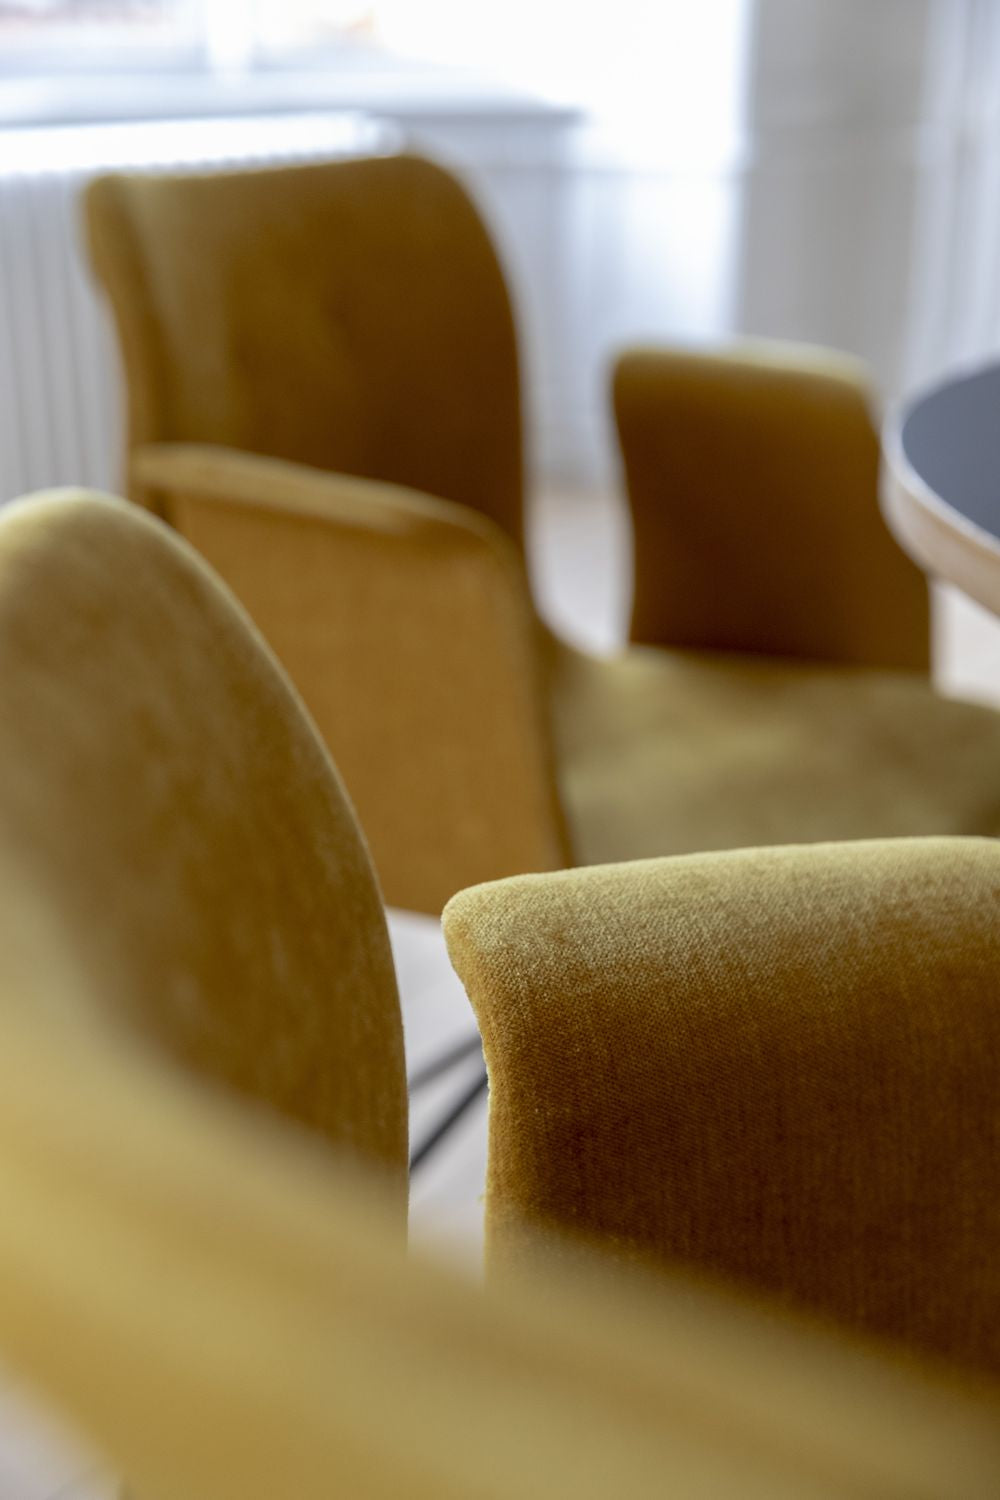 弯曲的Hansen Primum椅子带有扶手的黑色旋转框架，Tartufo Davos皮革